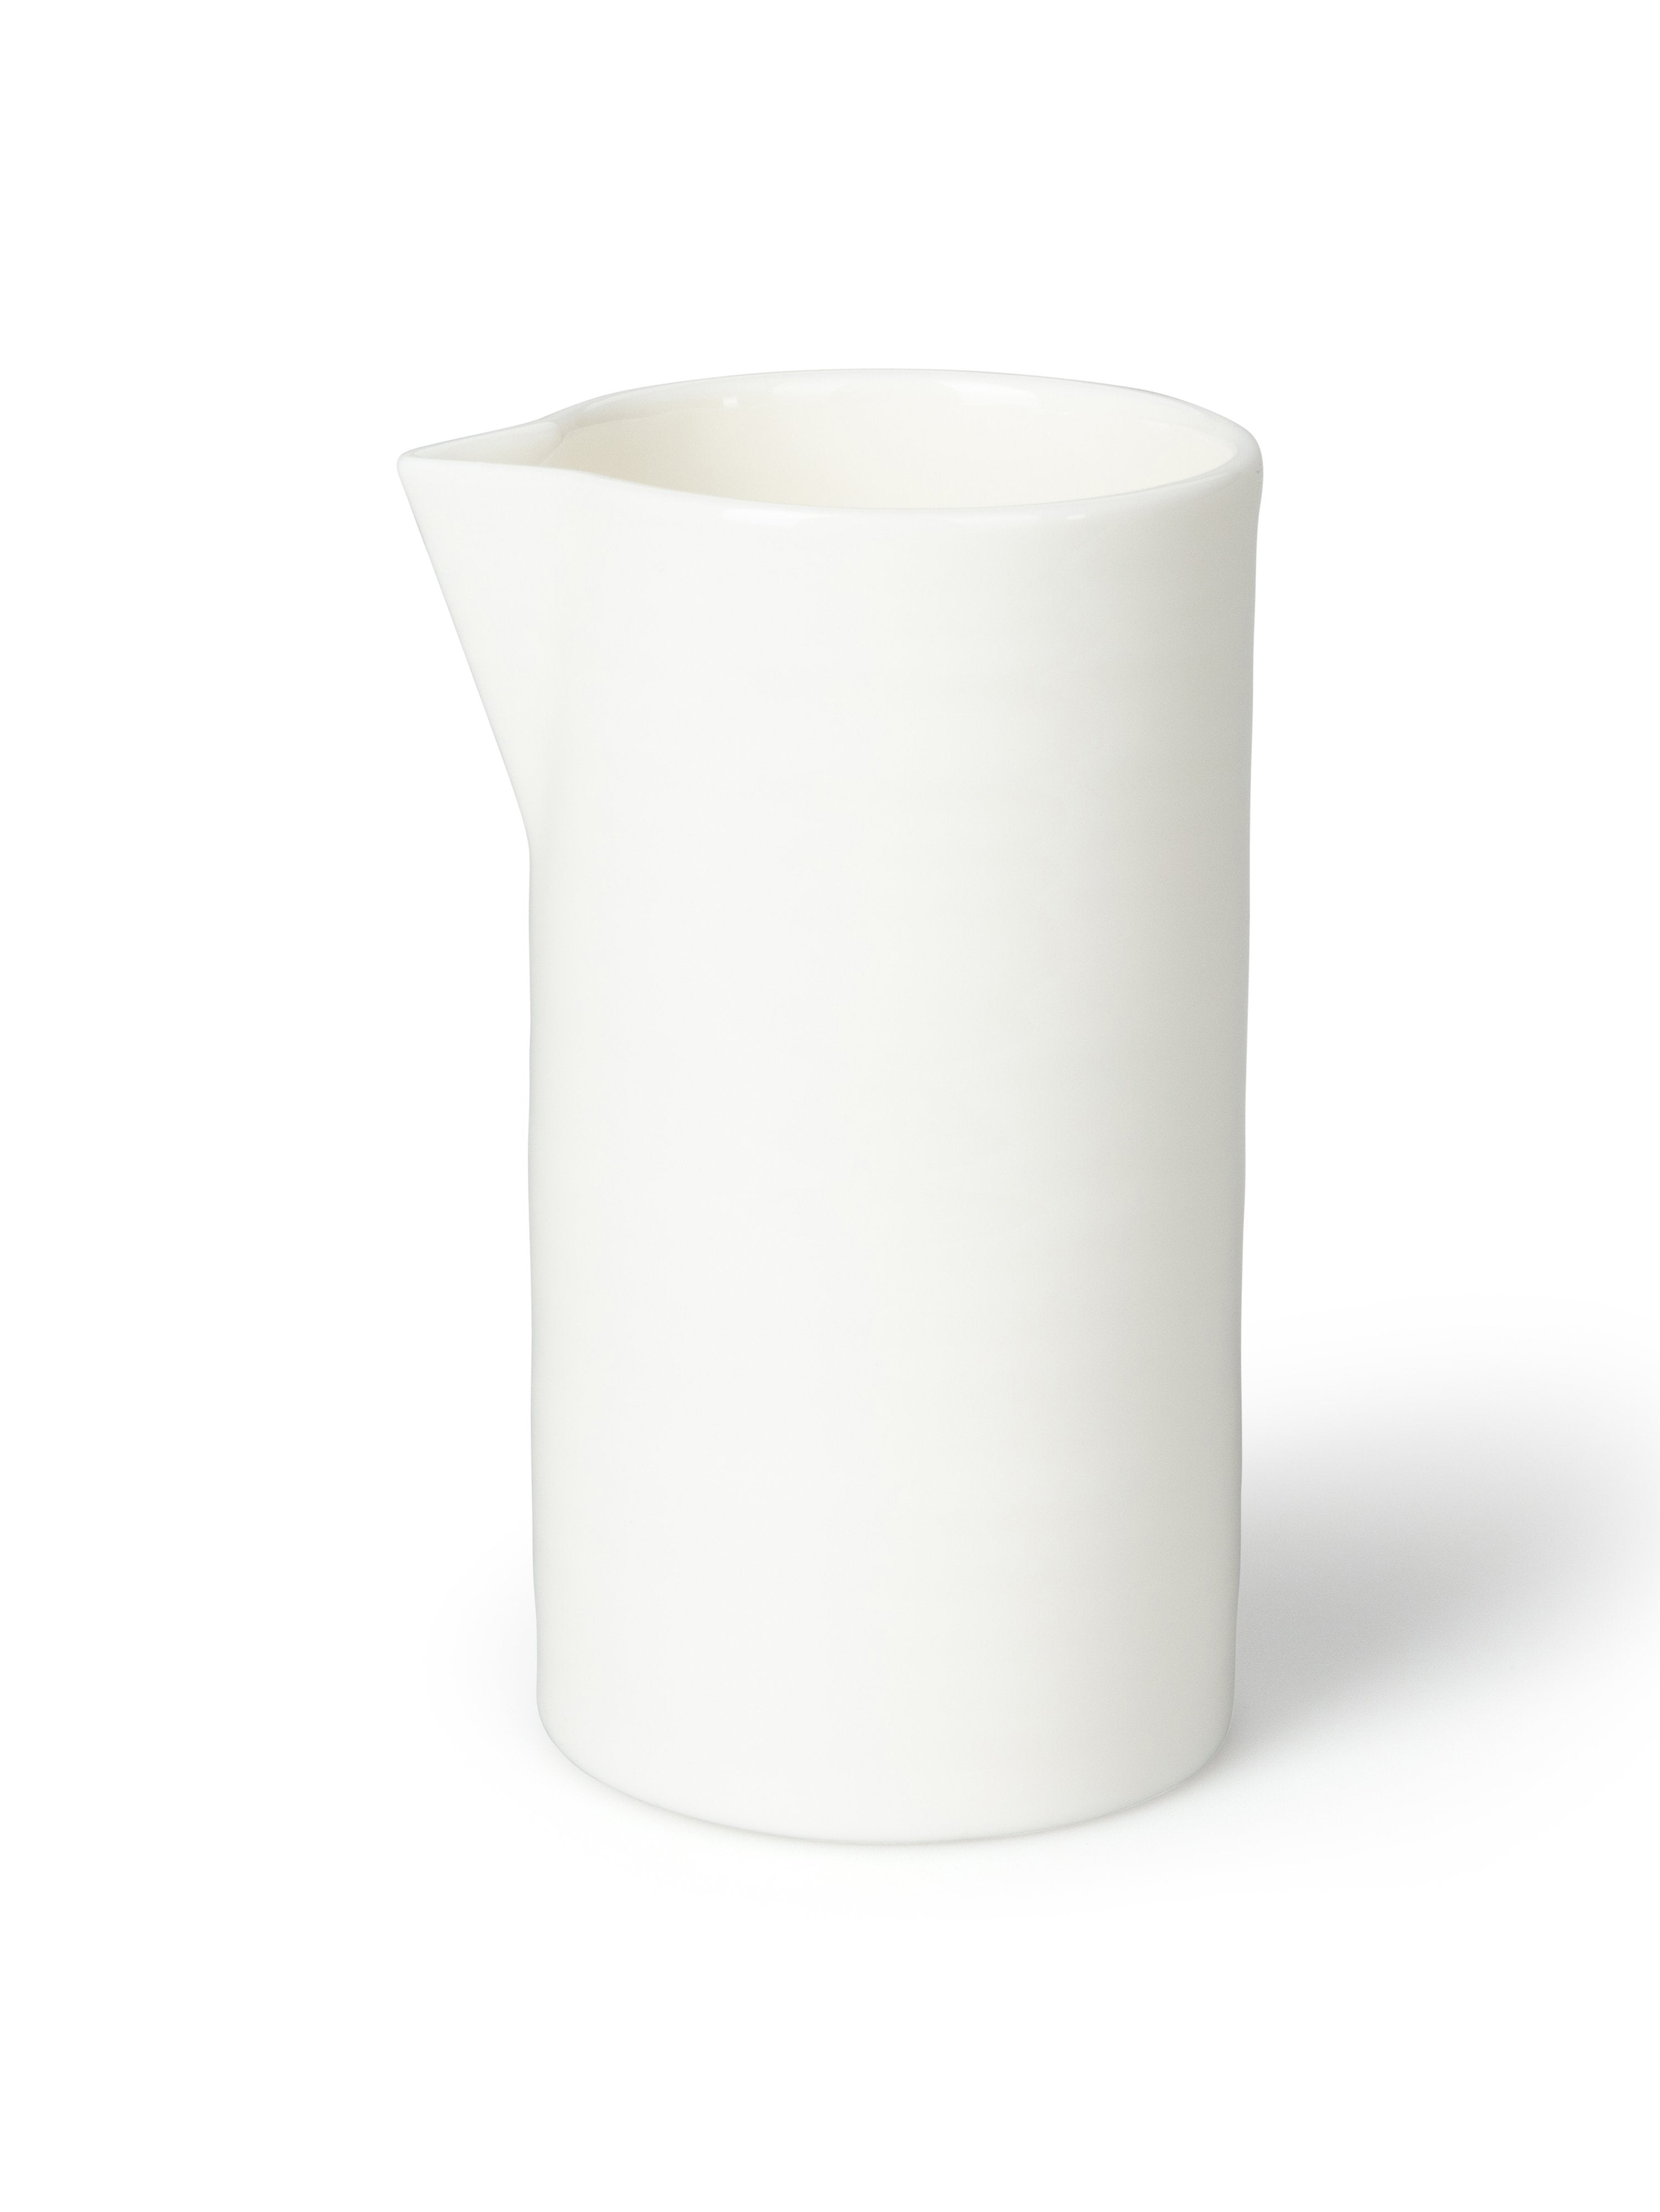 Porcelain Milk Jug